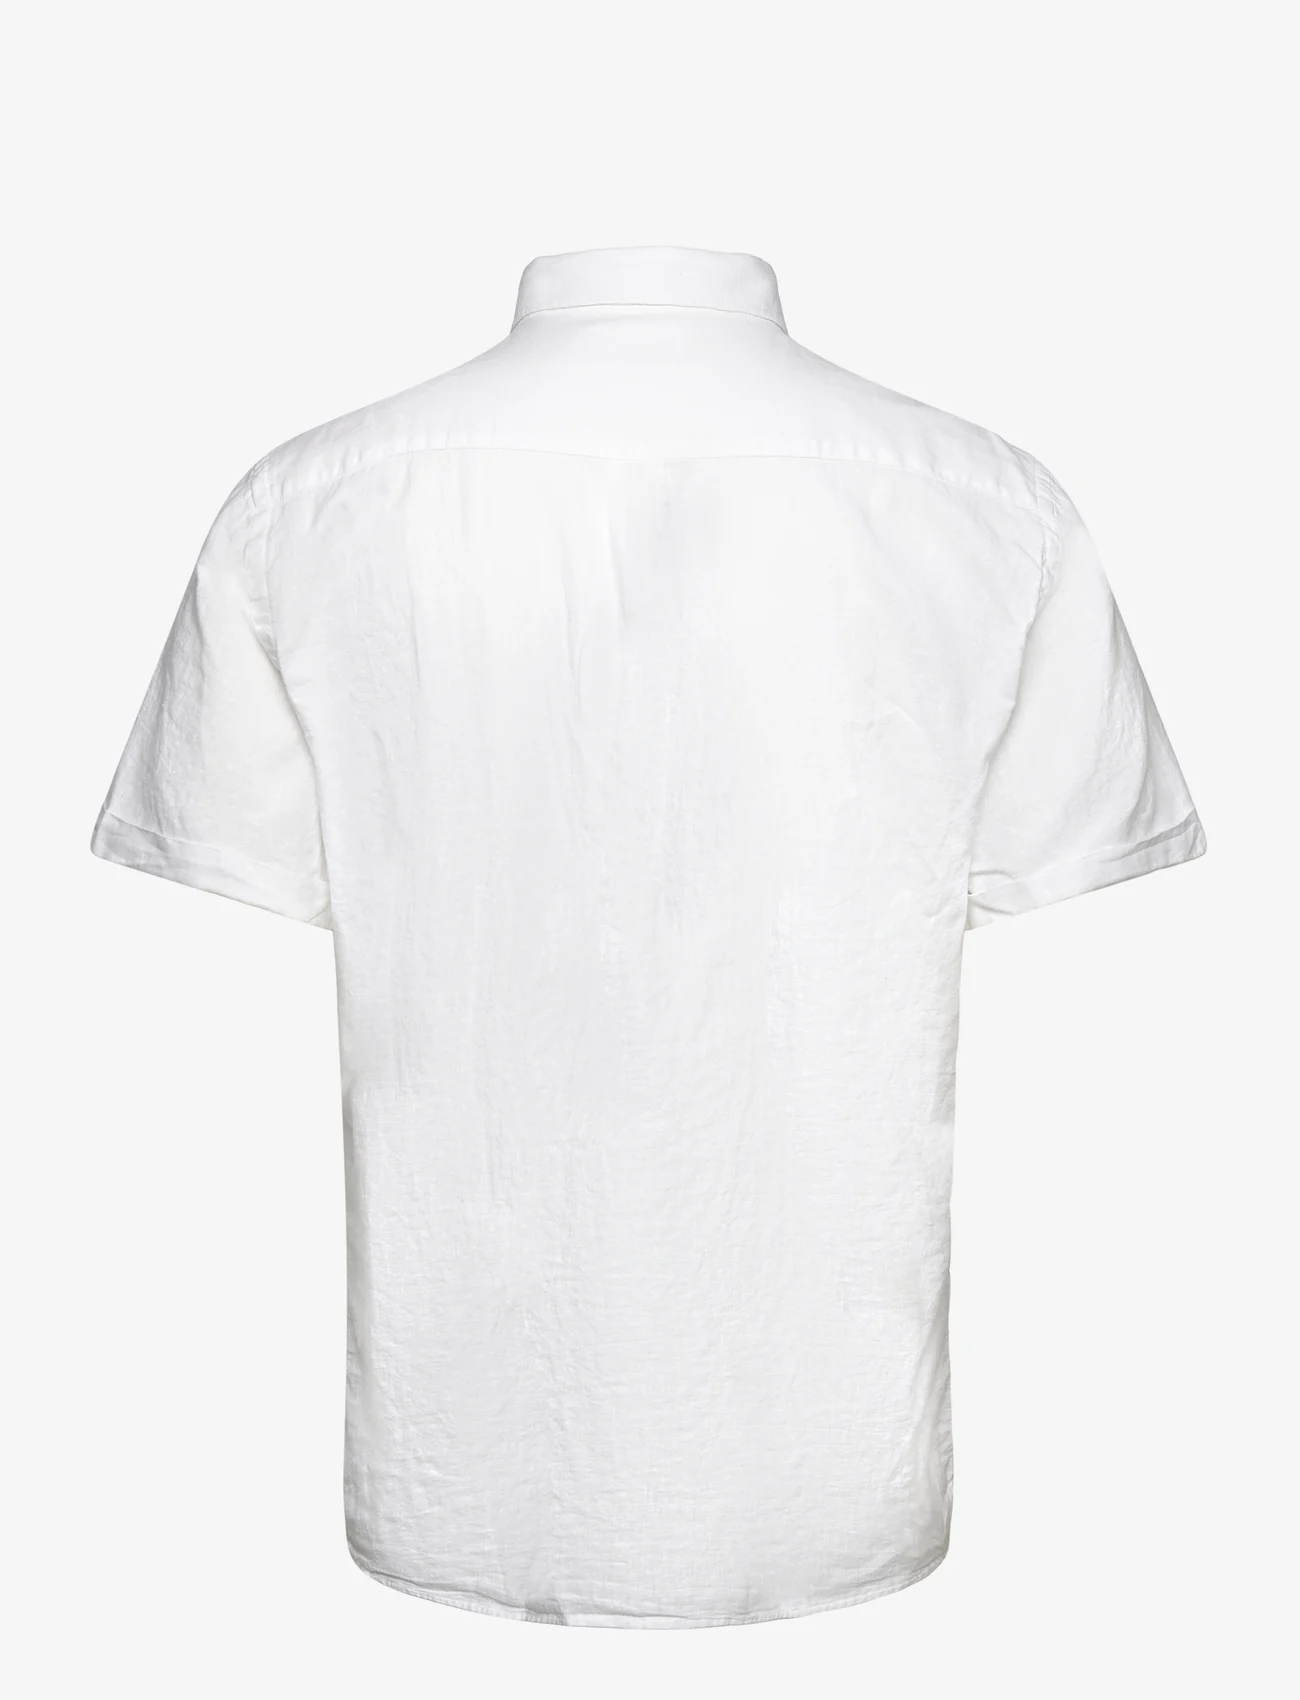 Lindbergh - Cotton/linen shirt S/S - koszule lniane - white - 1